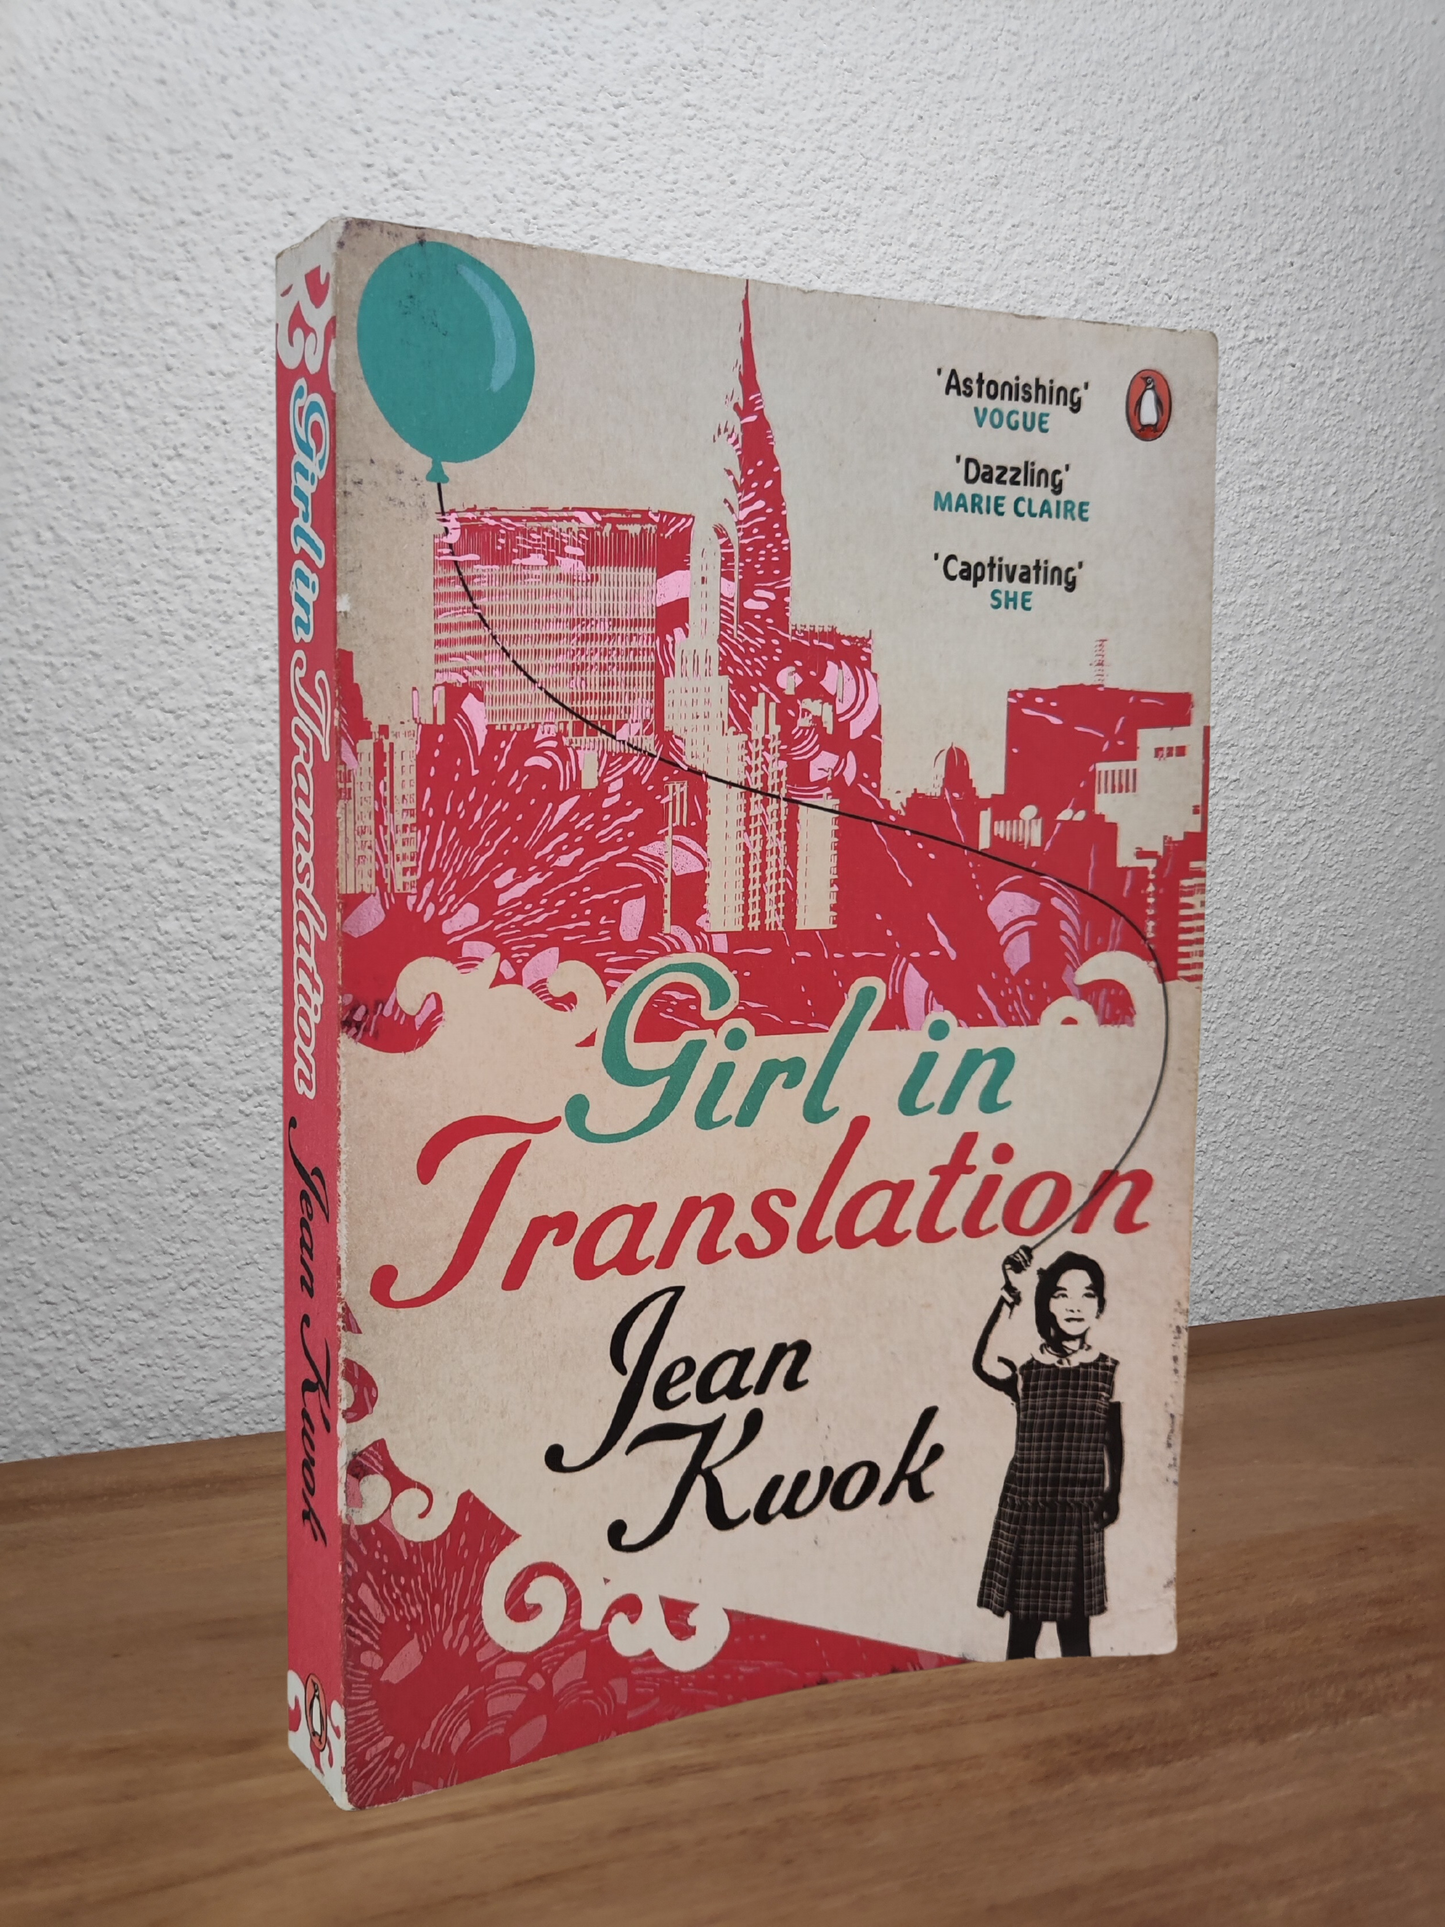 Jean Kwok - Girl in Translation